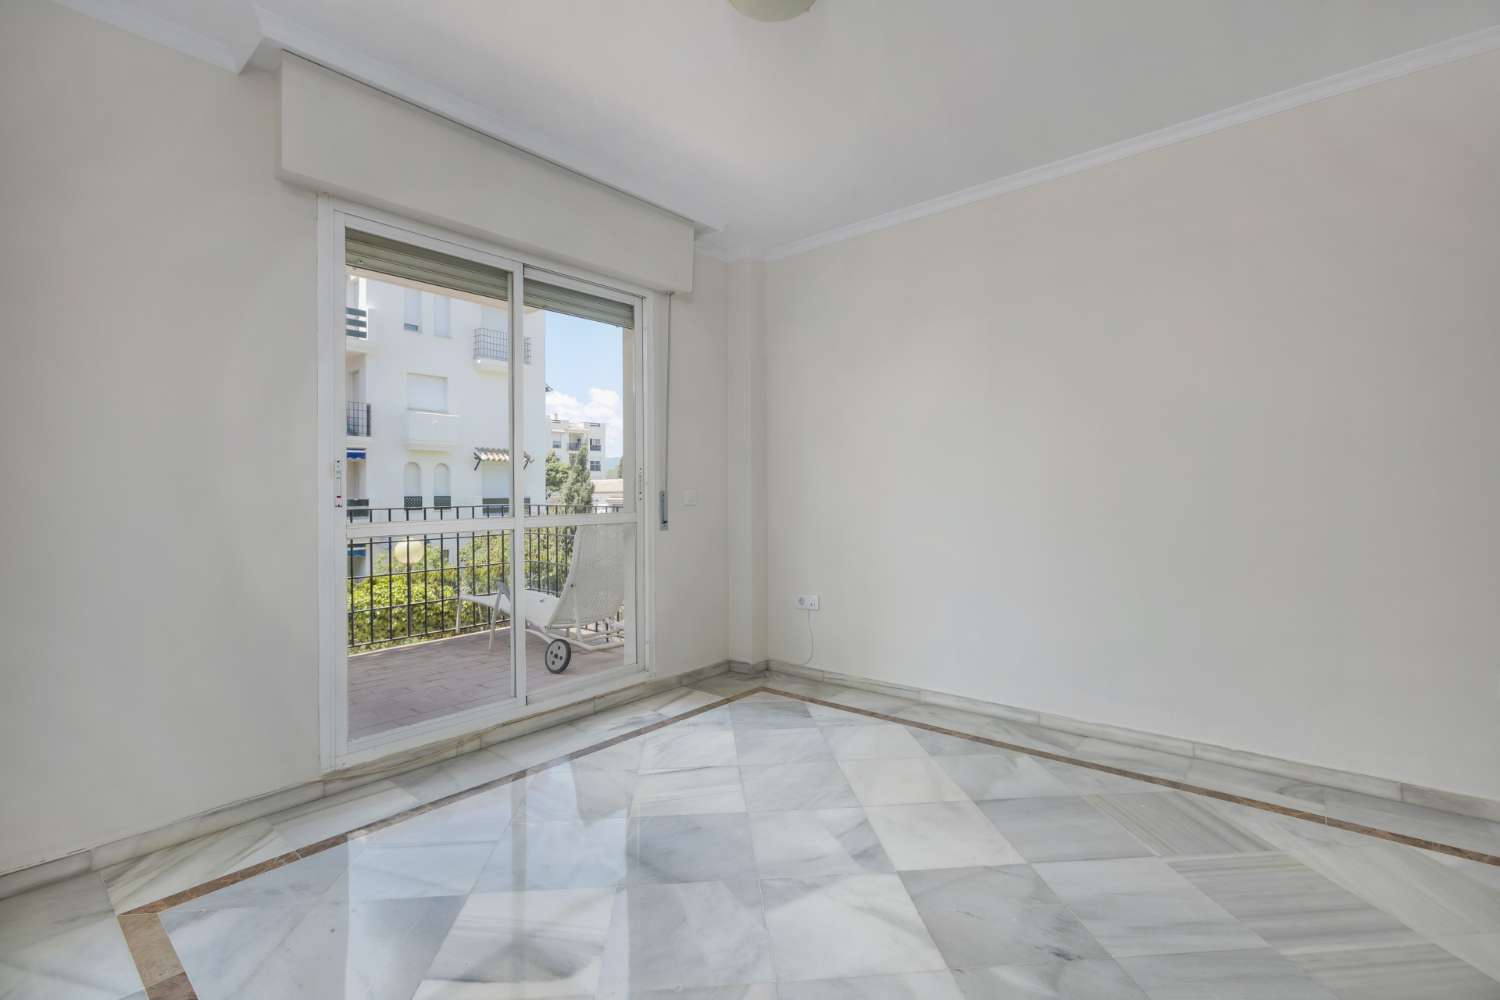 Apartament amb encant en venda. Molt bona ubicació a prop de Puerto Banús, Marbella.